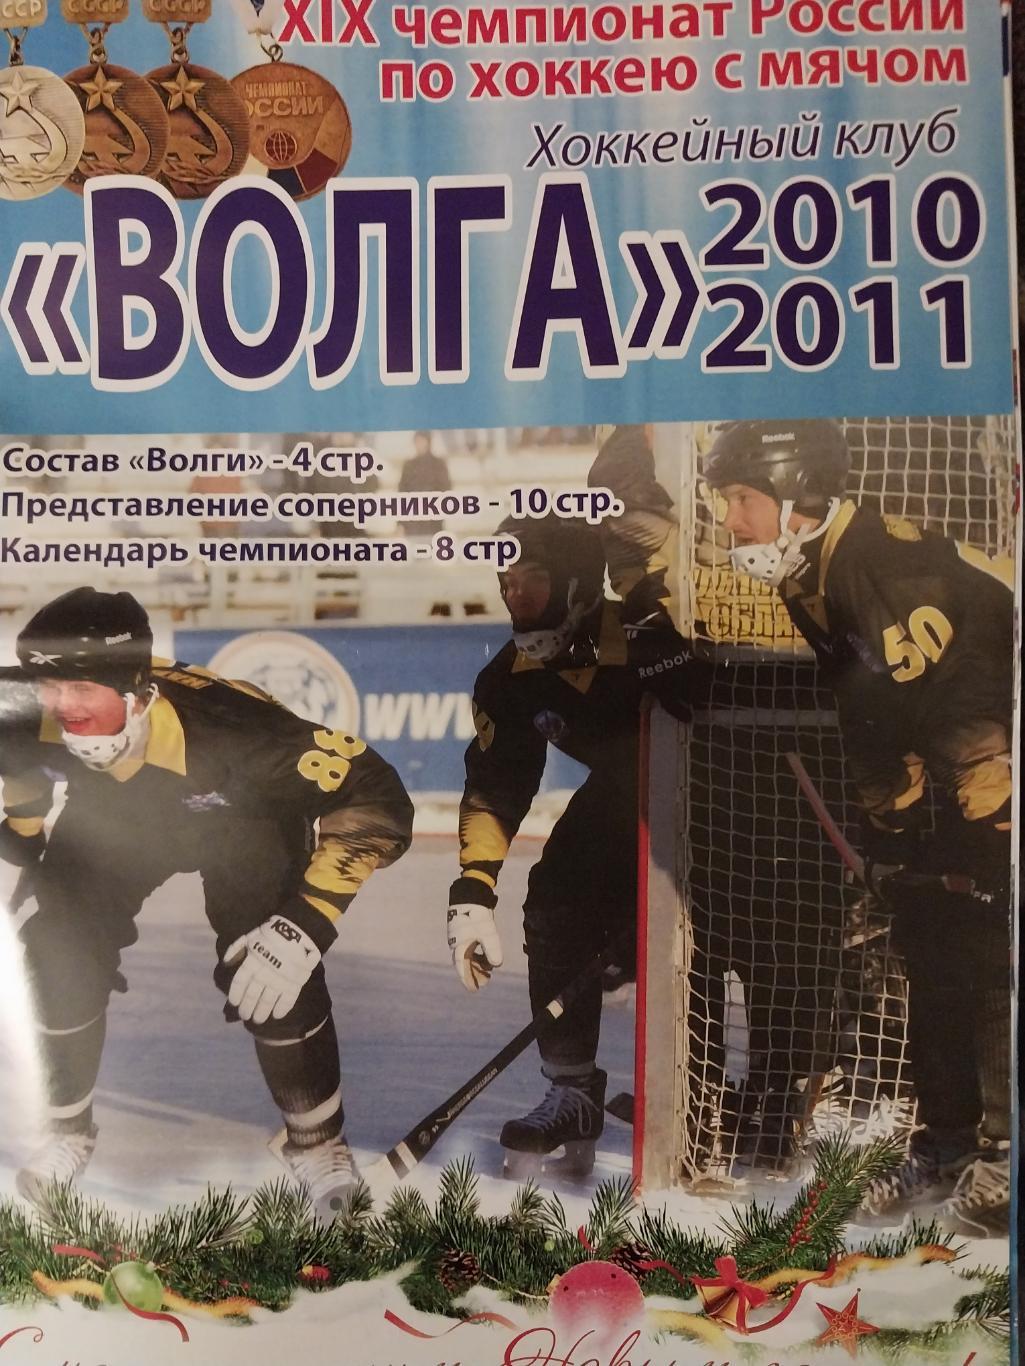 Хоккей с мячом, Волга 2010-2011